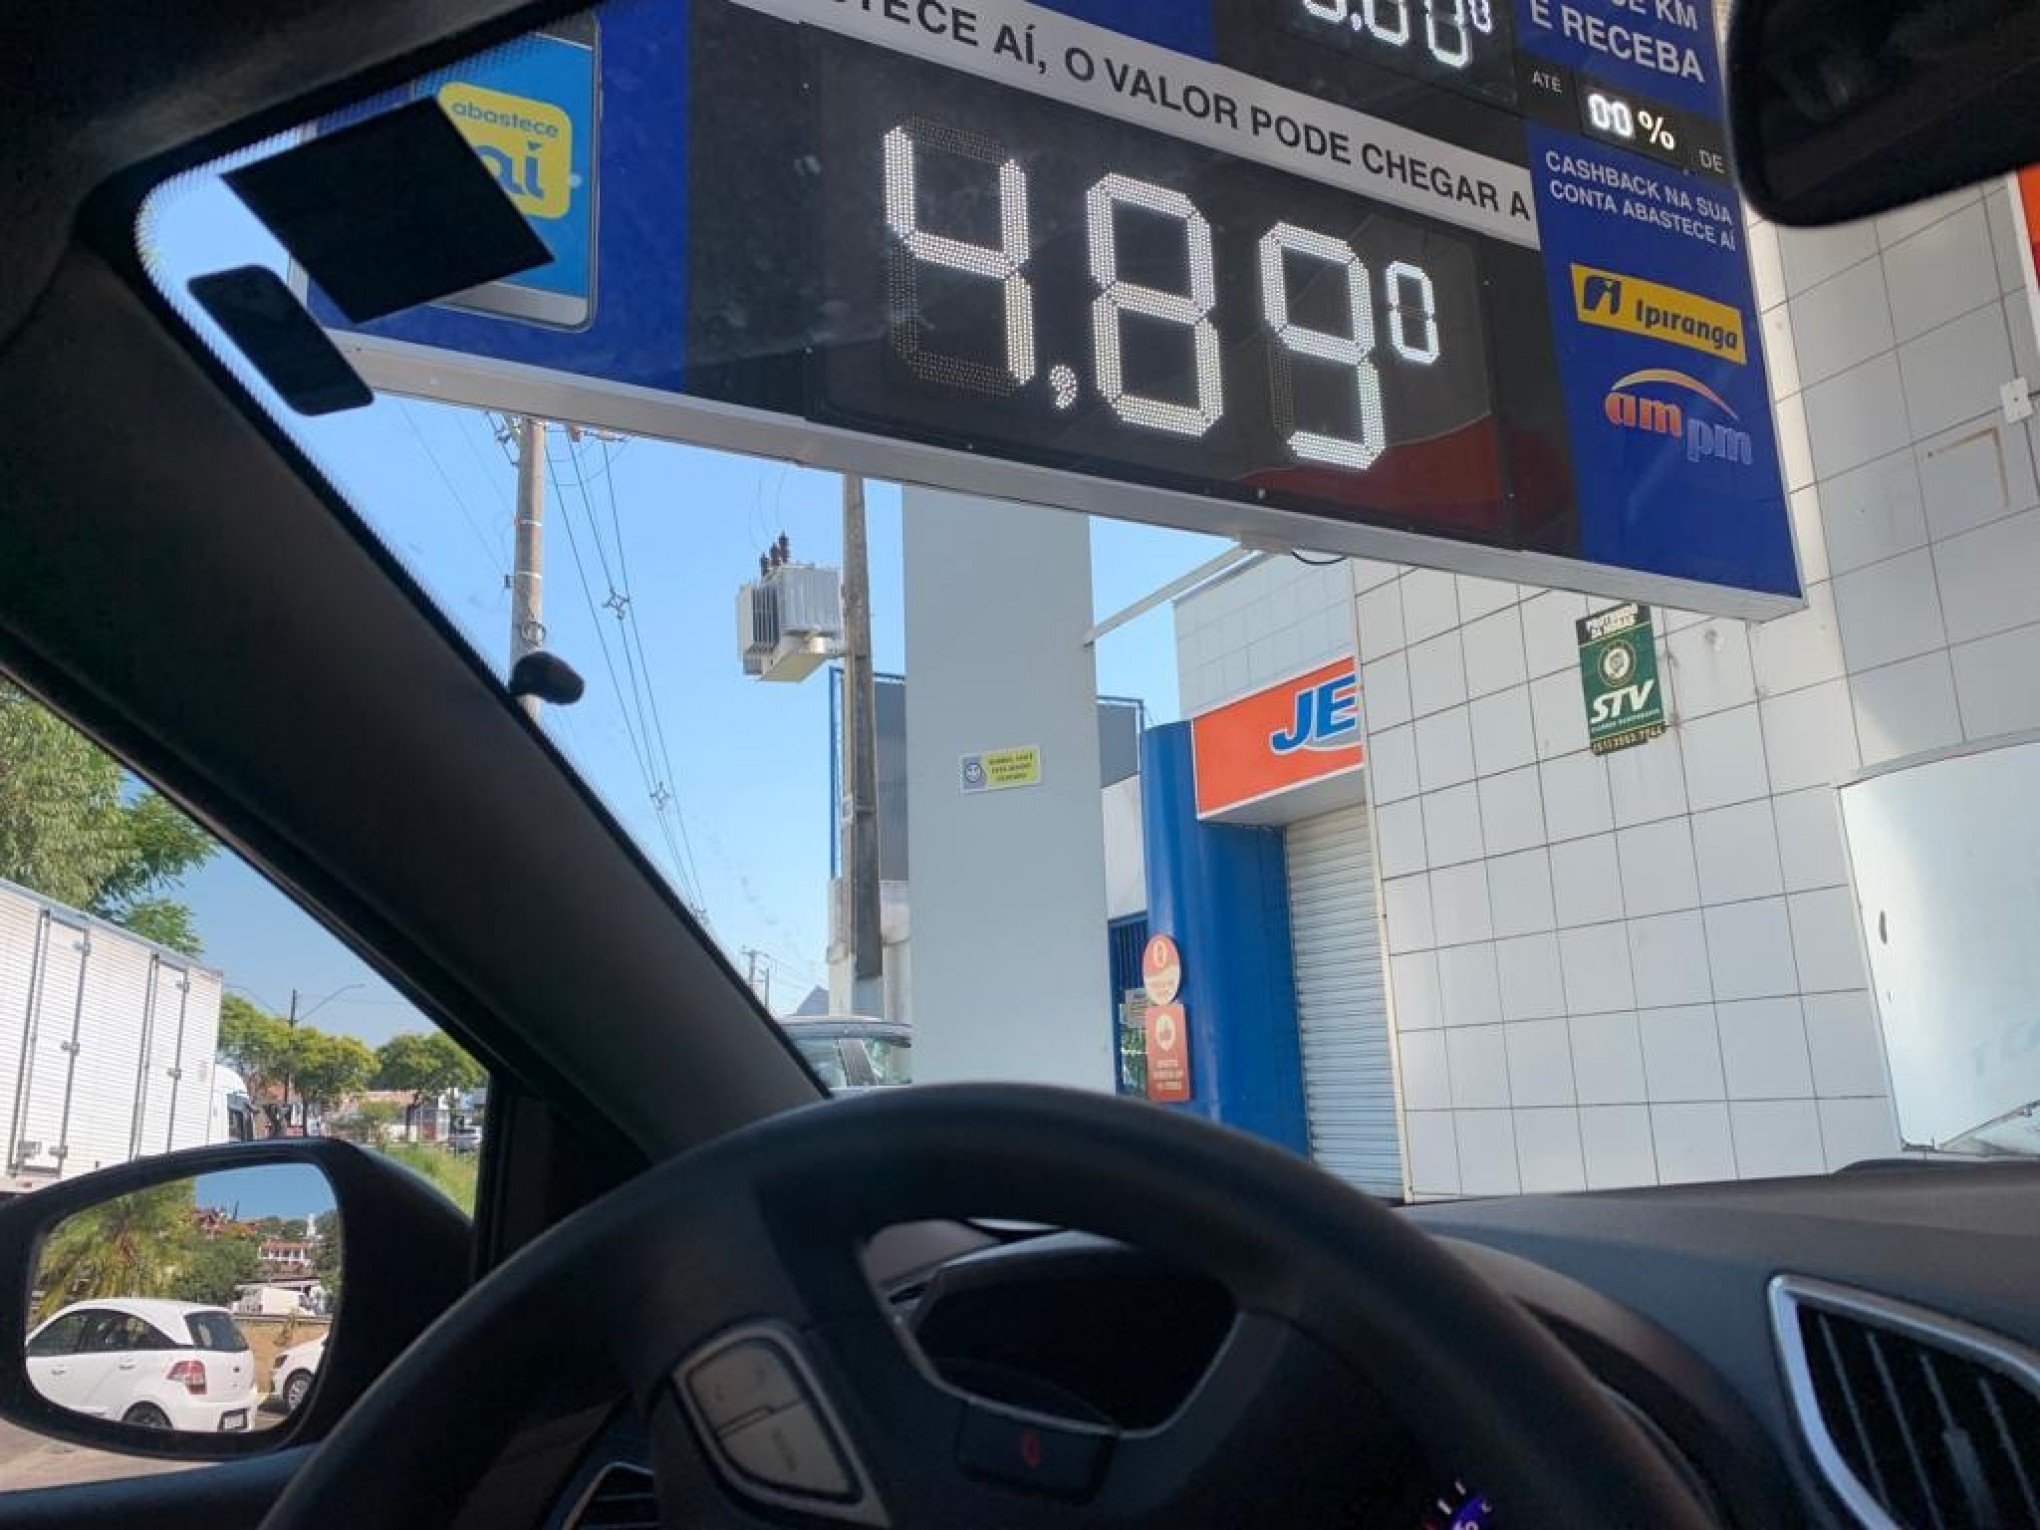 Gasolina é encontrada entre R$ 4,55 e R$ 4,99 em postos de Novo Hamburgo após anúncio da Petrobras